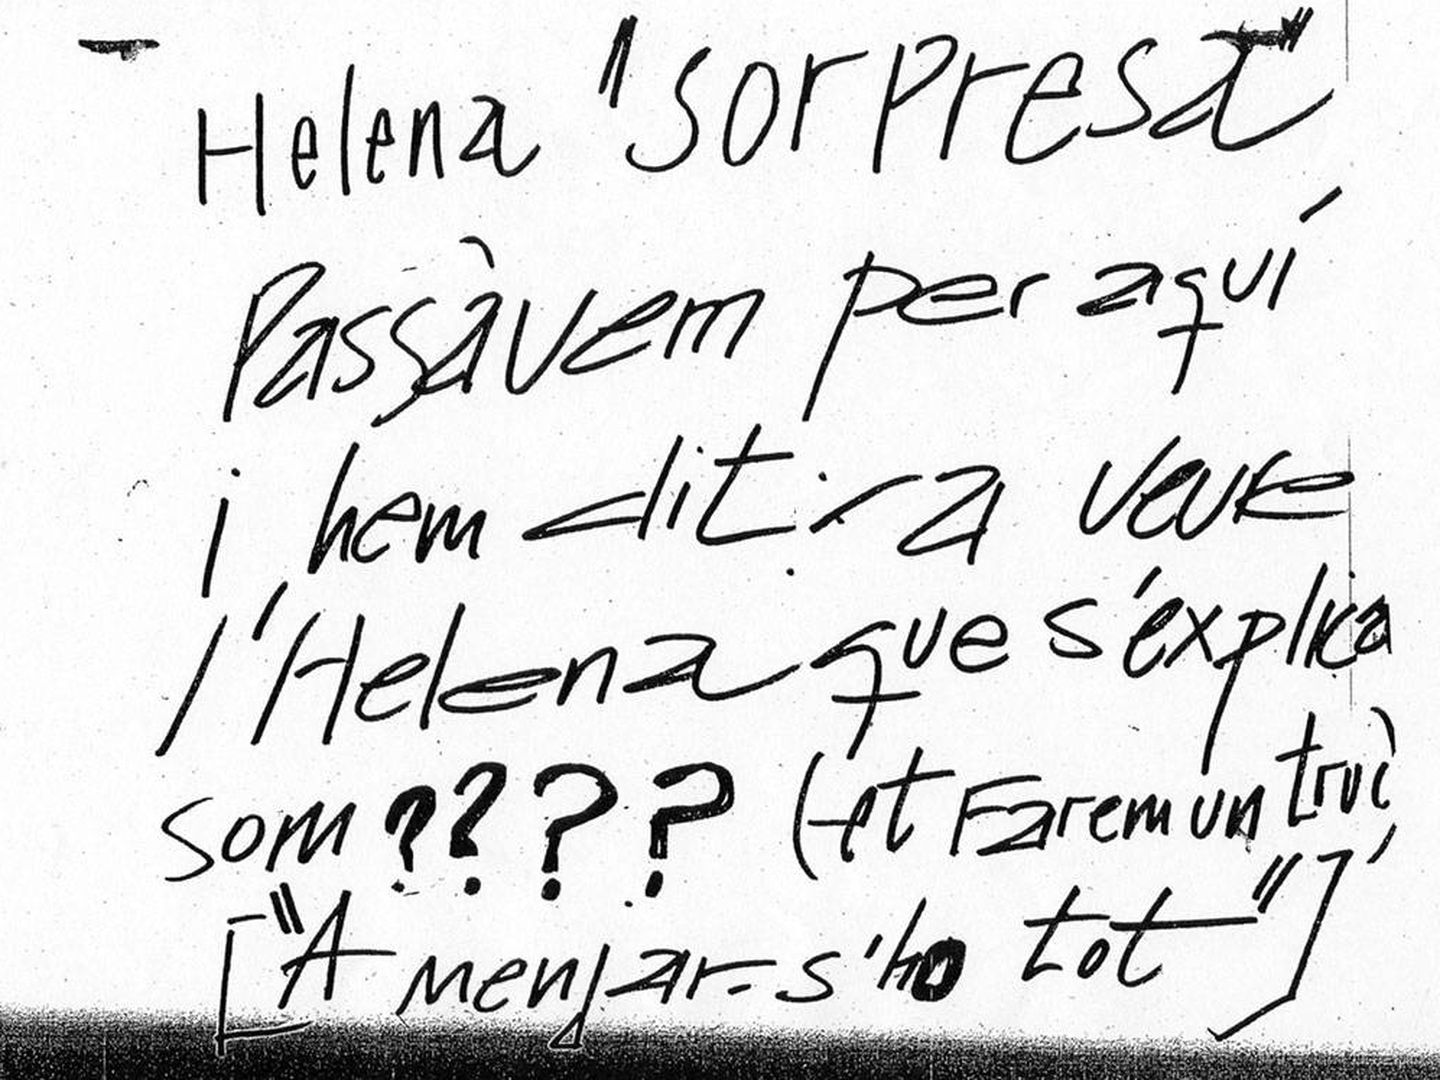 La primera nota anónima que recibió Helena Jubany el 17 de septiembre de 2001. Fuente: Archivo